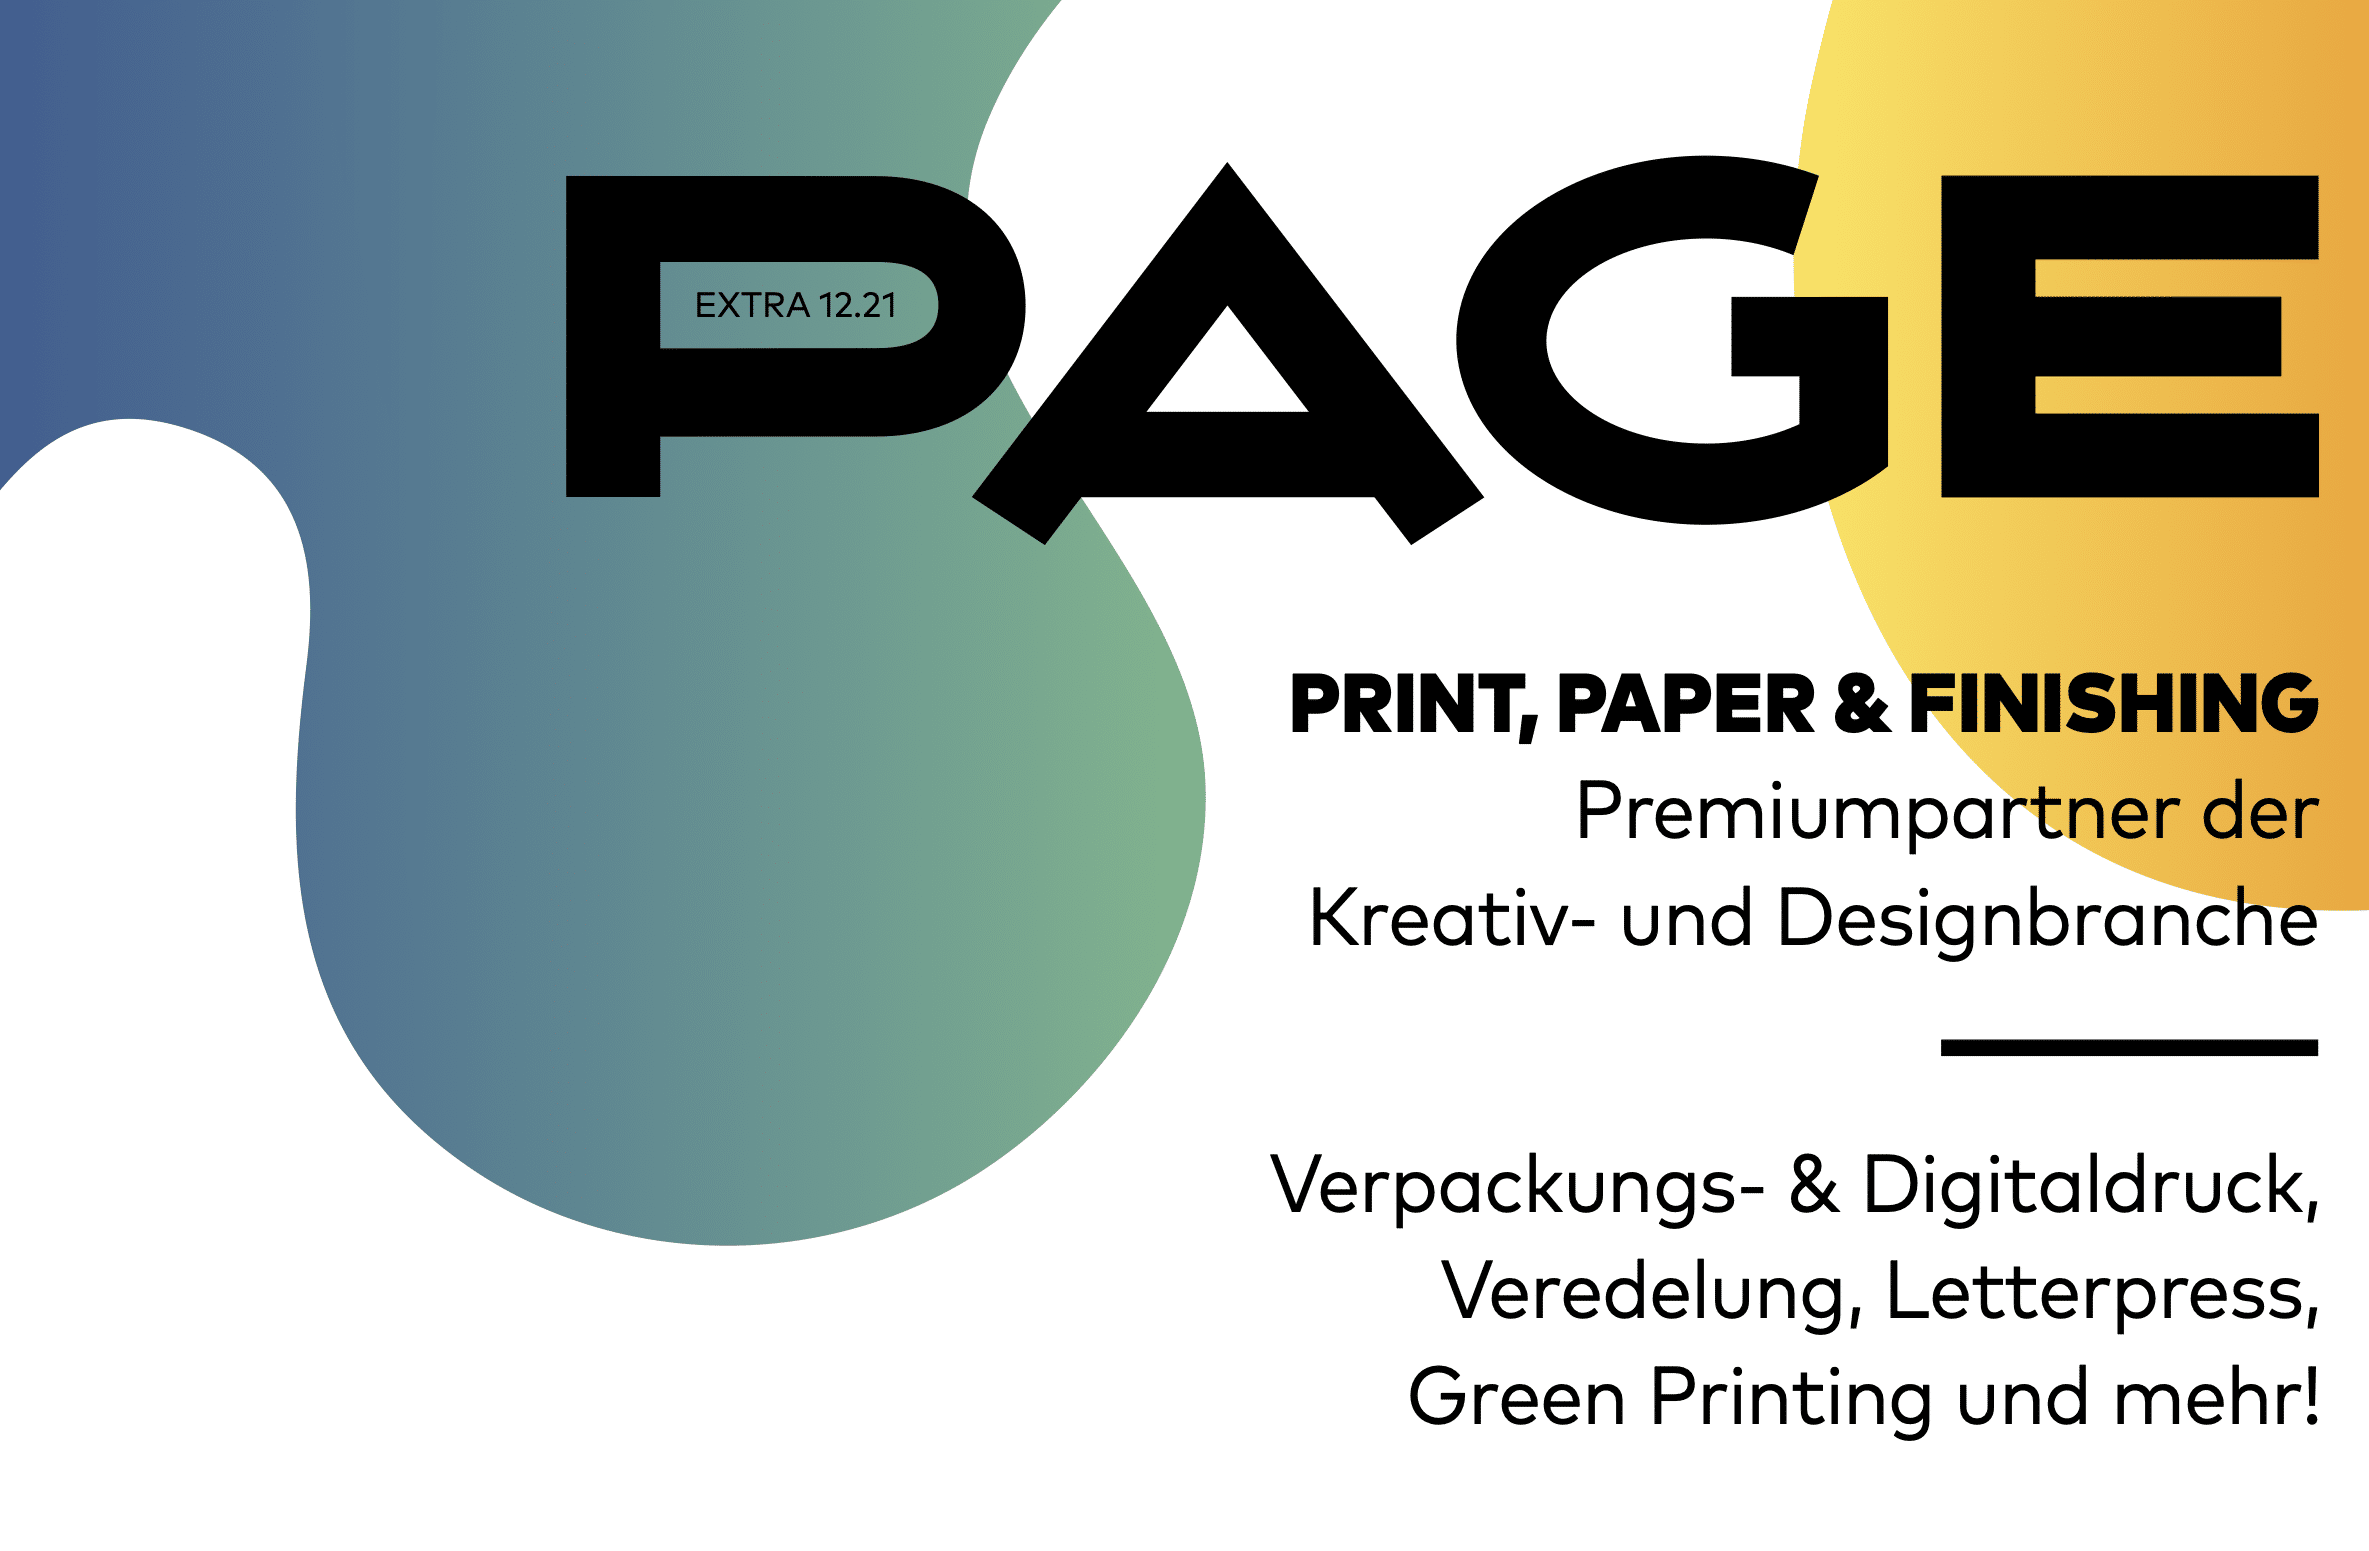 Booklet für nachhaltige Print-Produktion